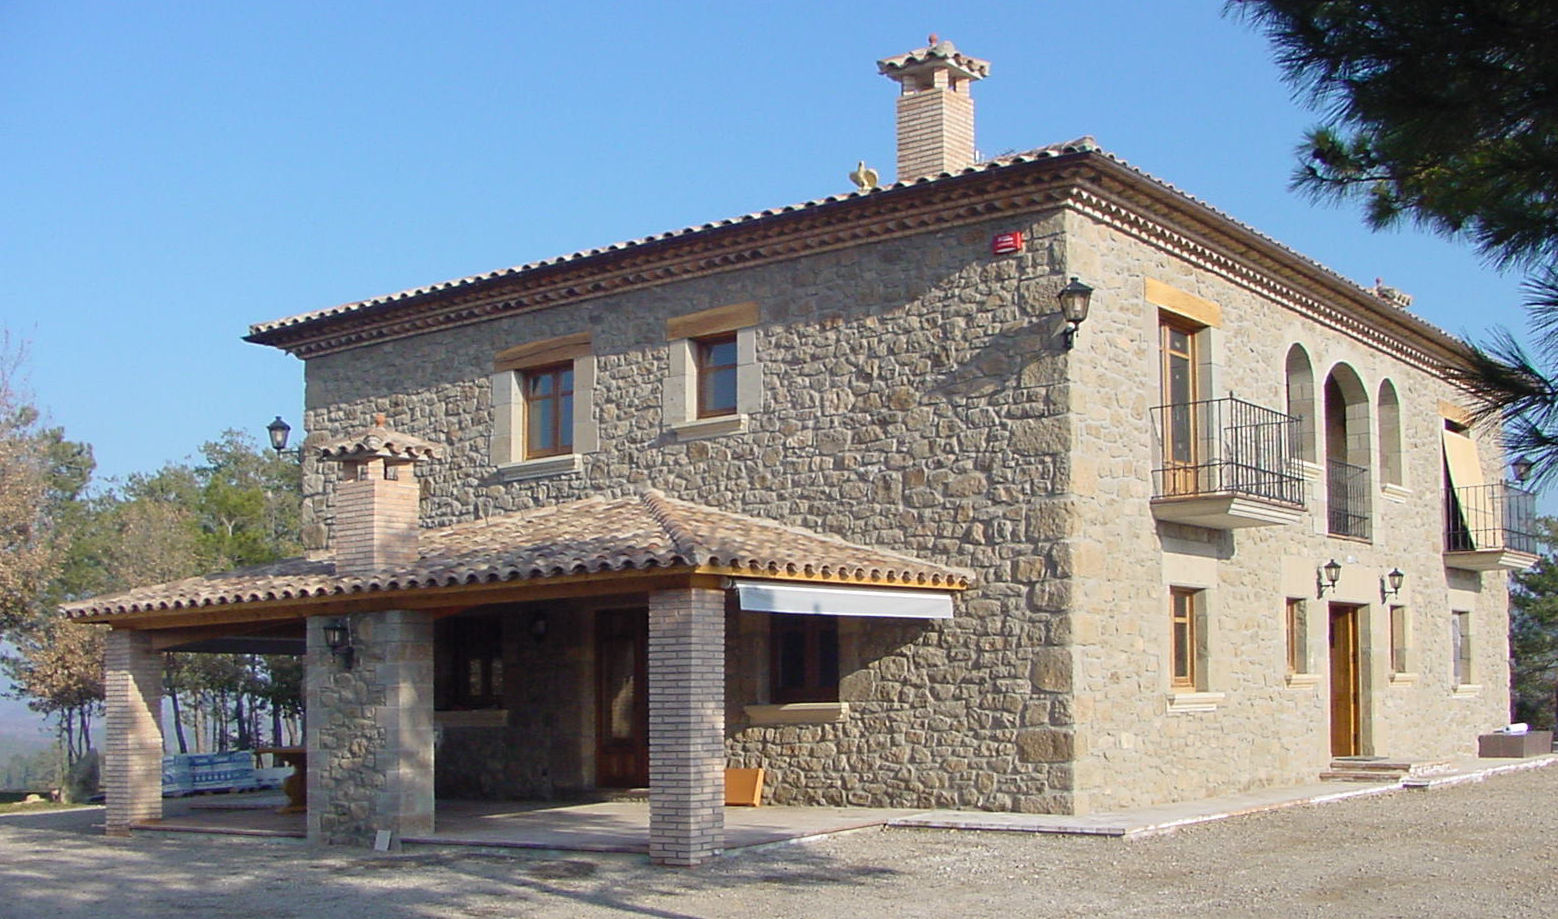 Casa de turismo rural en la Torre d'Oristà (Barcelona), ALENTORN i ALENTORN ARQUITECTES, SLP ALENTORN i ALENTORN ARQUITECTES, SLP Rustykalne domy Kamień